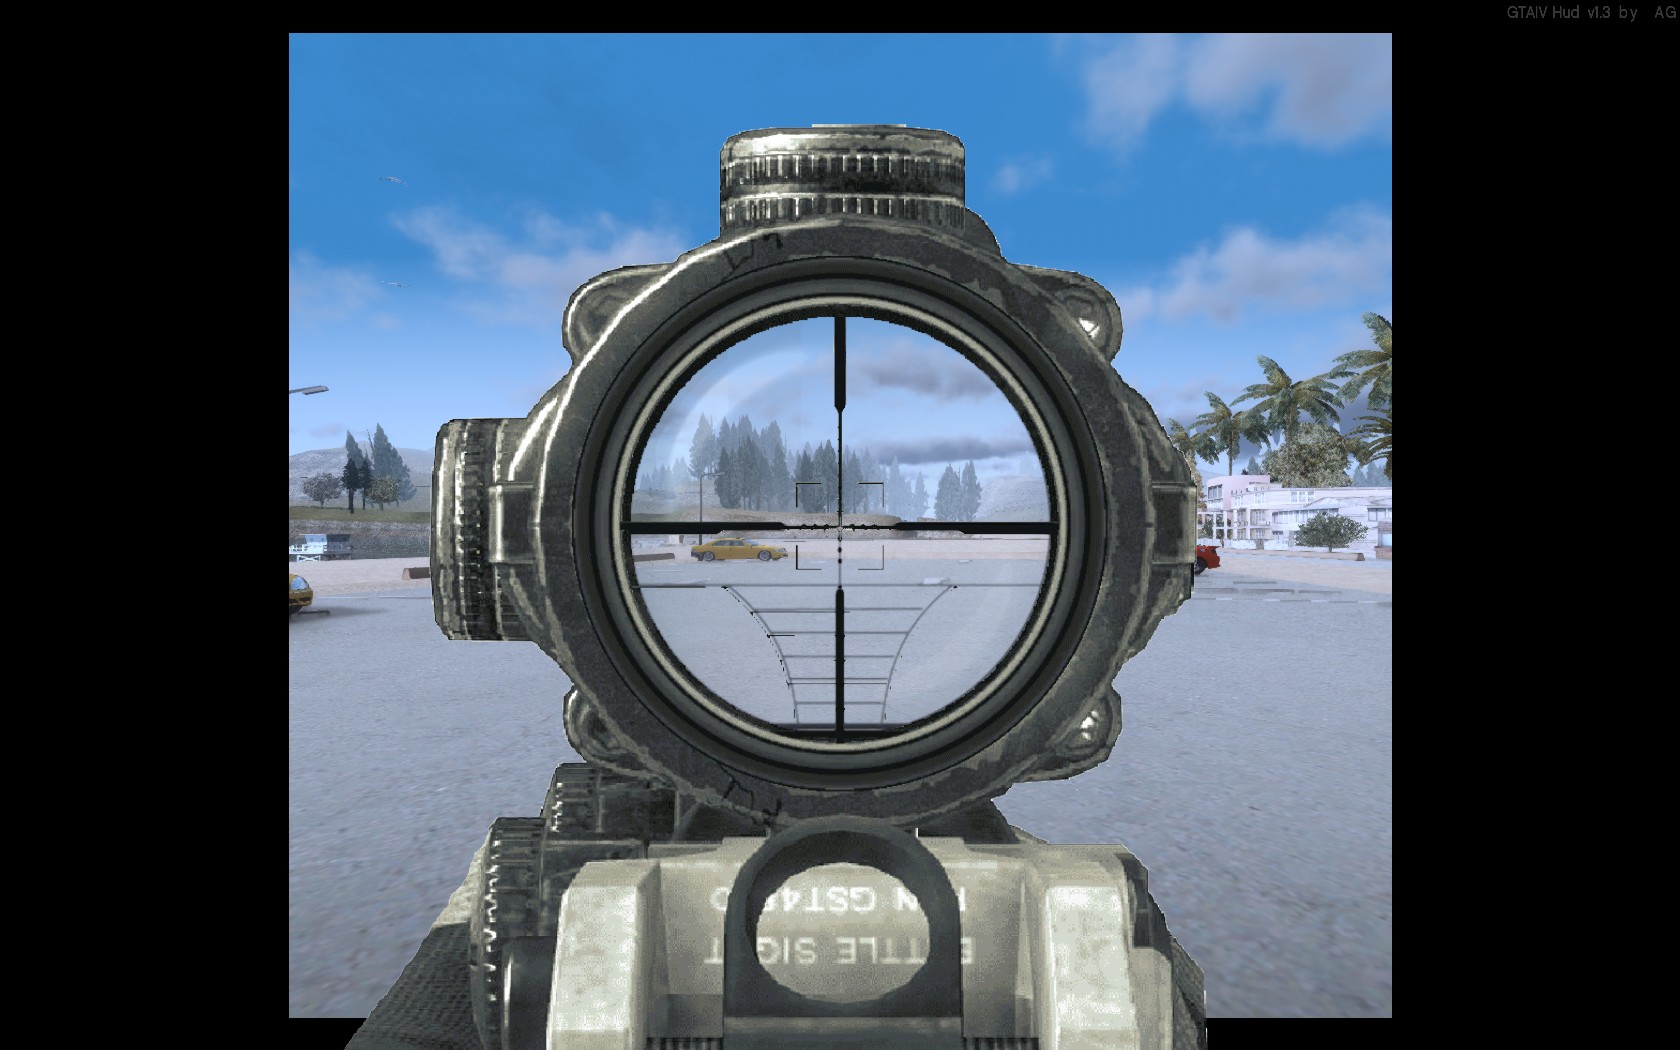 GTA IV - Armas no Mapa - Devora Games